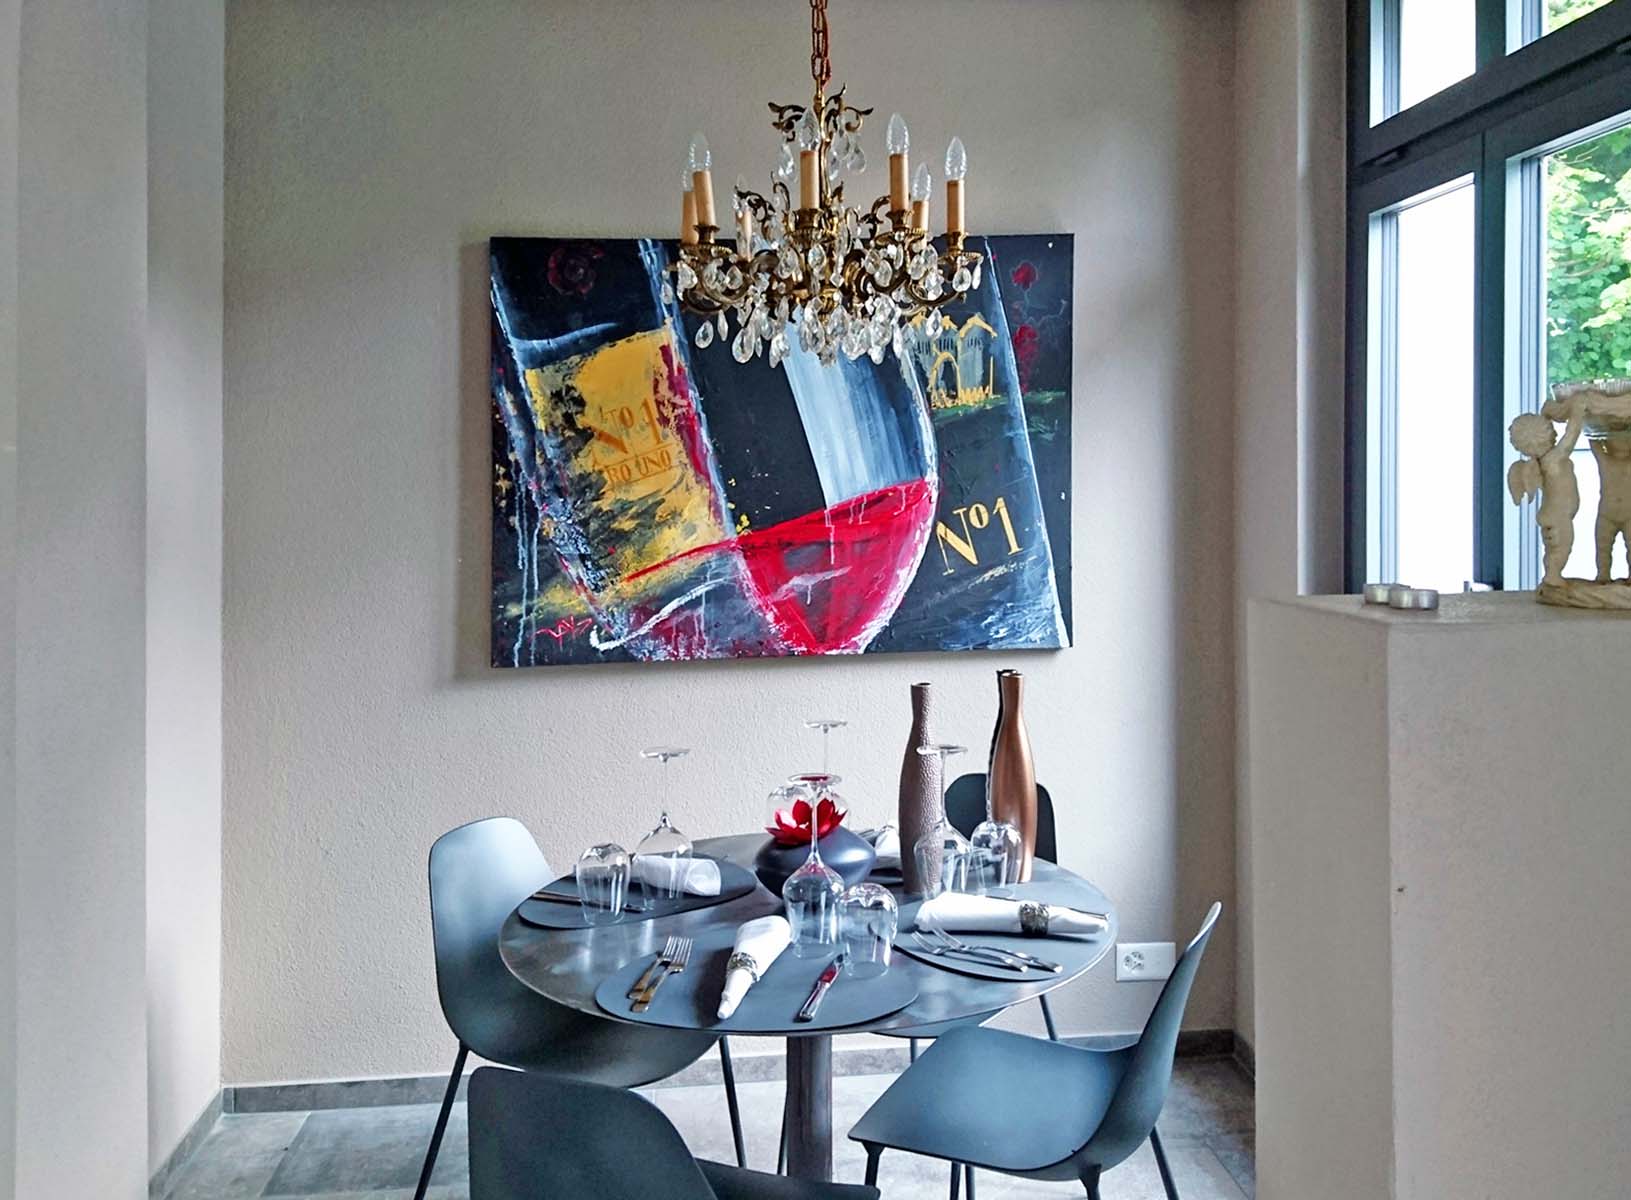 Kundenauftrag für Restaurant "Wein No1" 140 x 100 cm